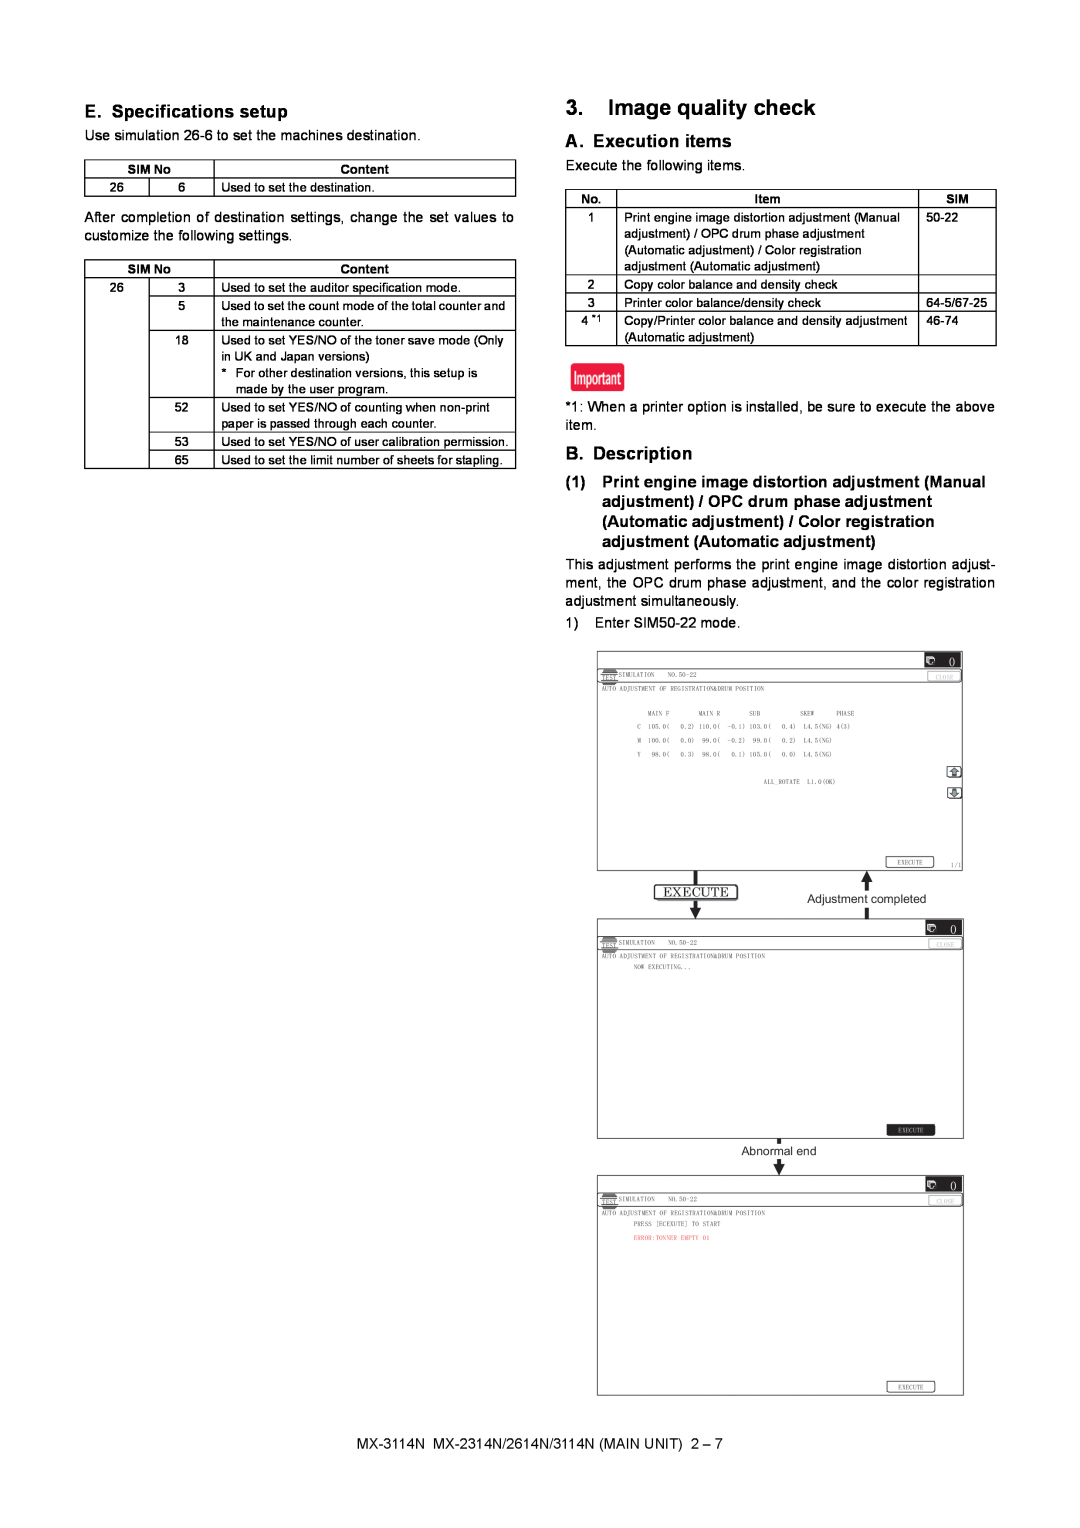 Sharp MX-2314N Image quality check, E. Specifications setup, A. Execution items, B. Description, SIM No, Content, Execute 